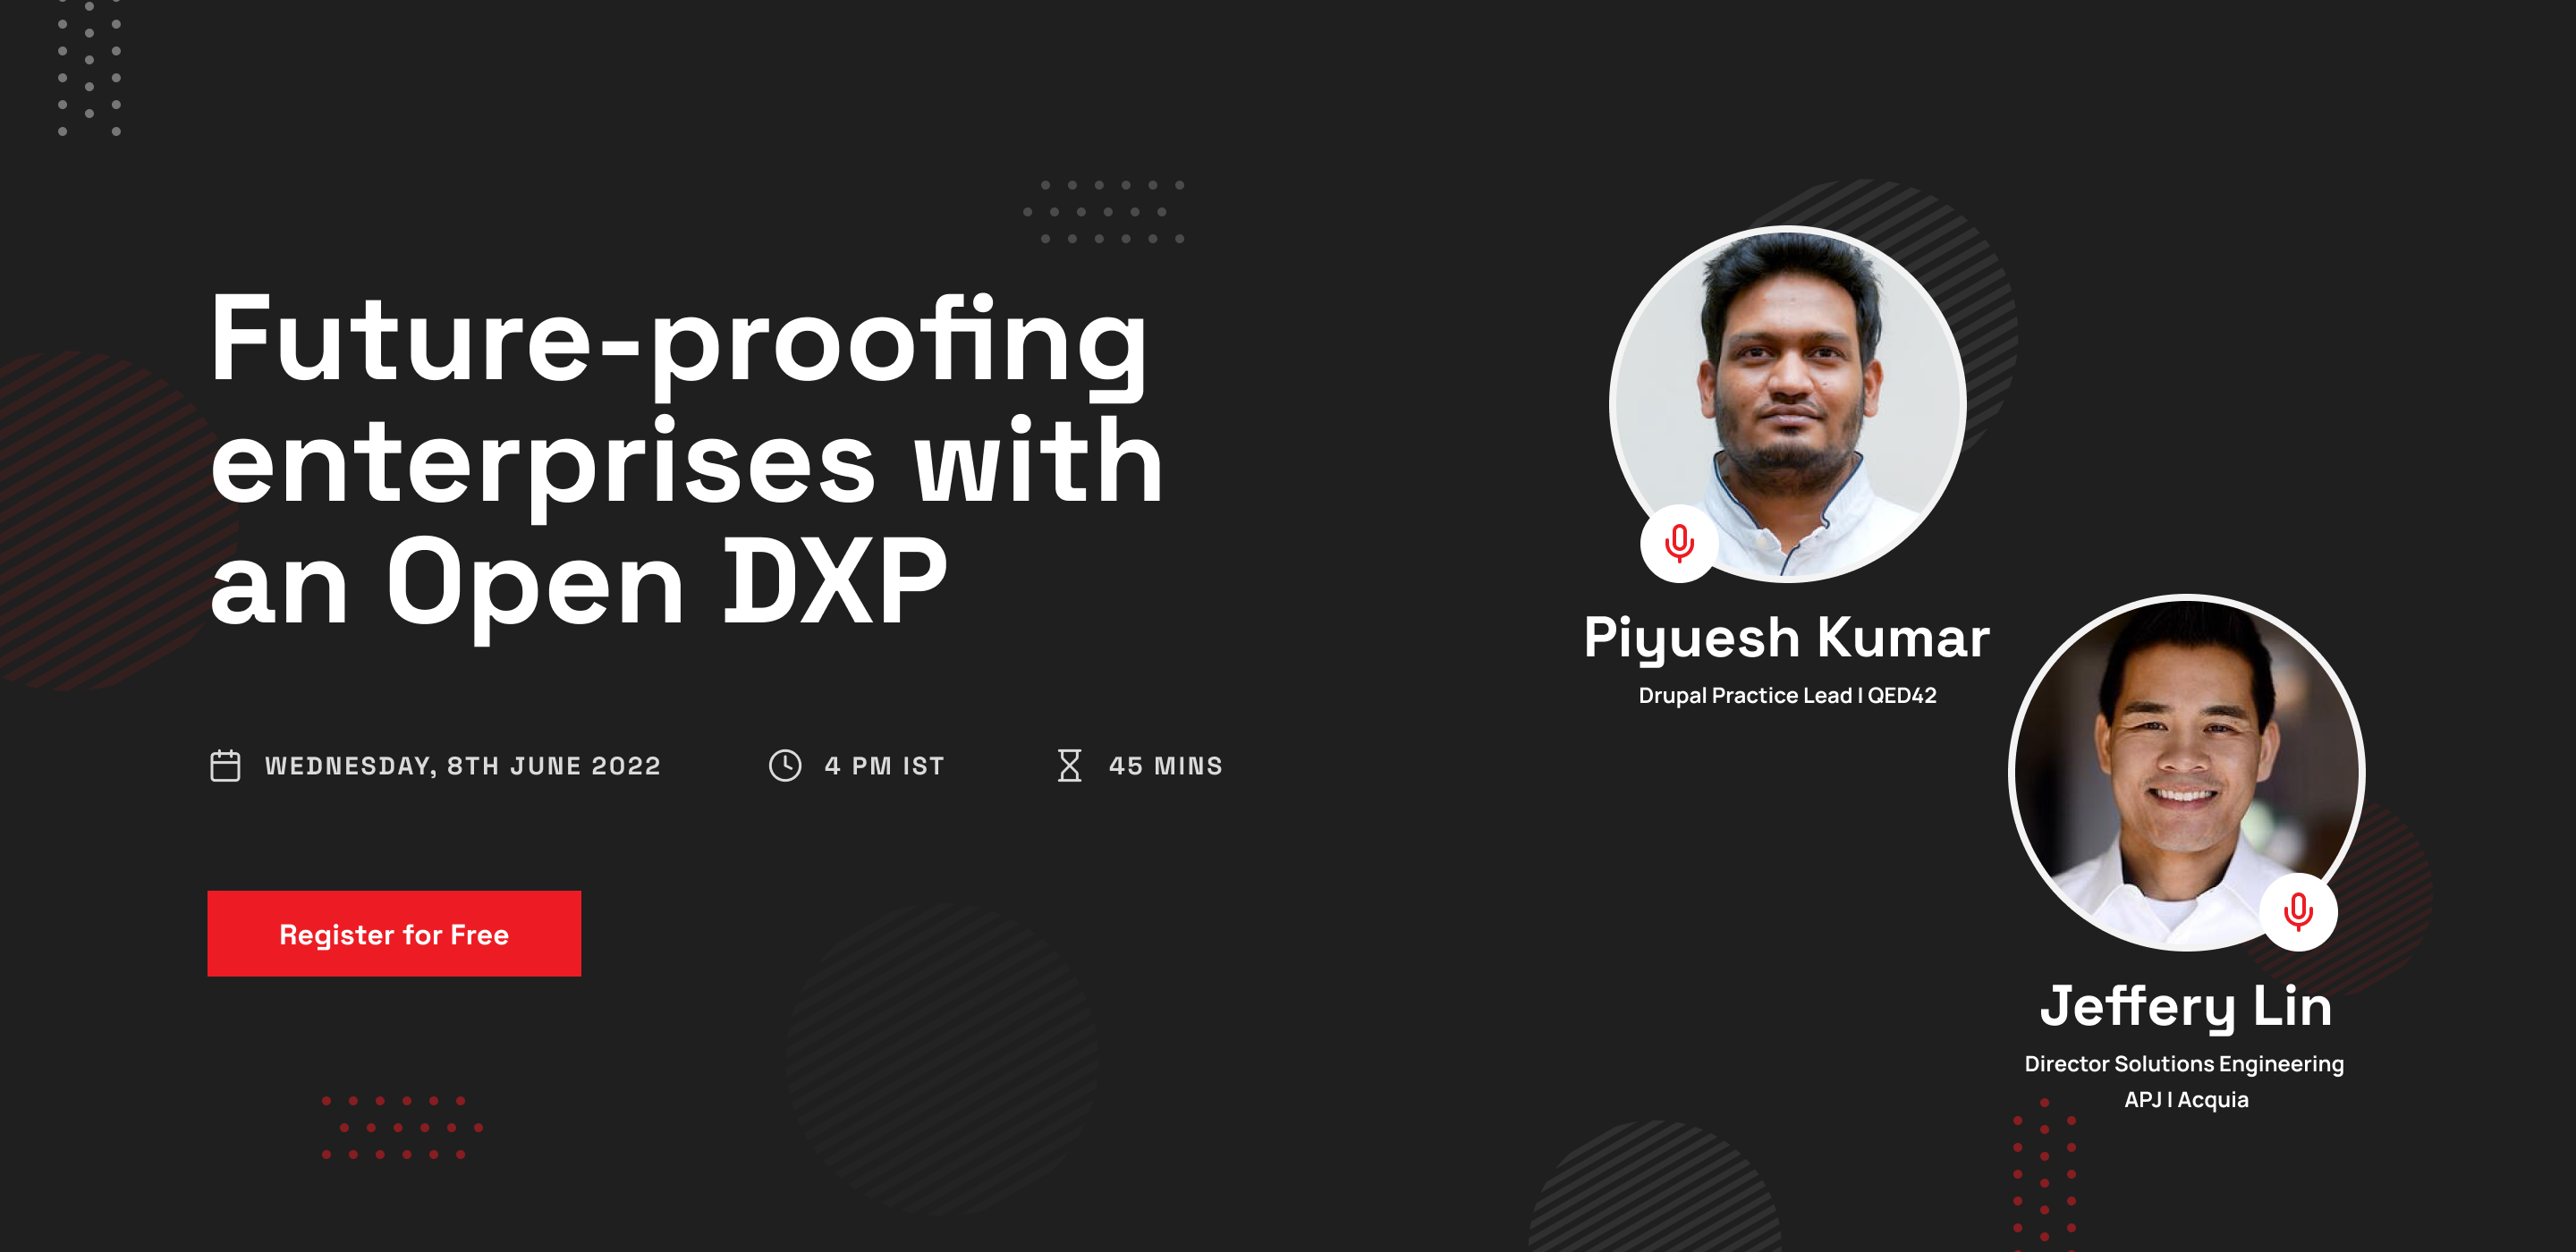 Future-proofing enterprises with an open DXP, Online Event